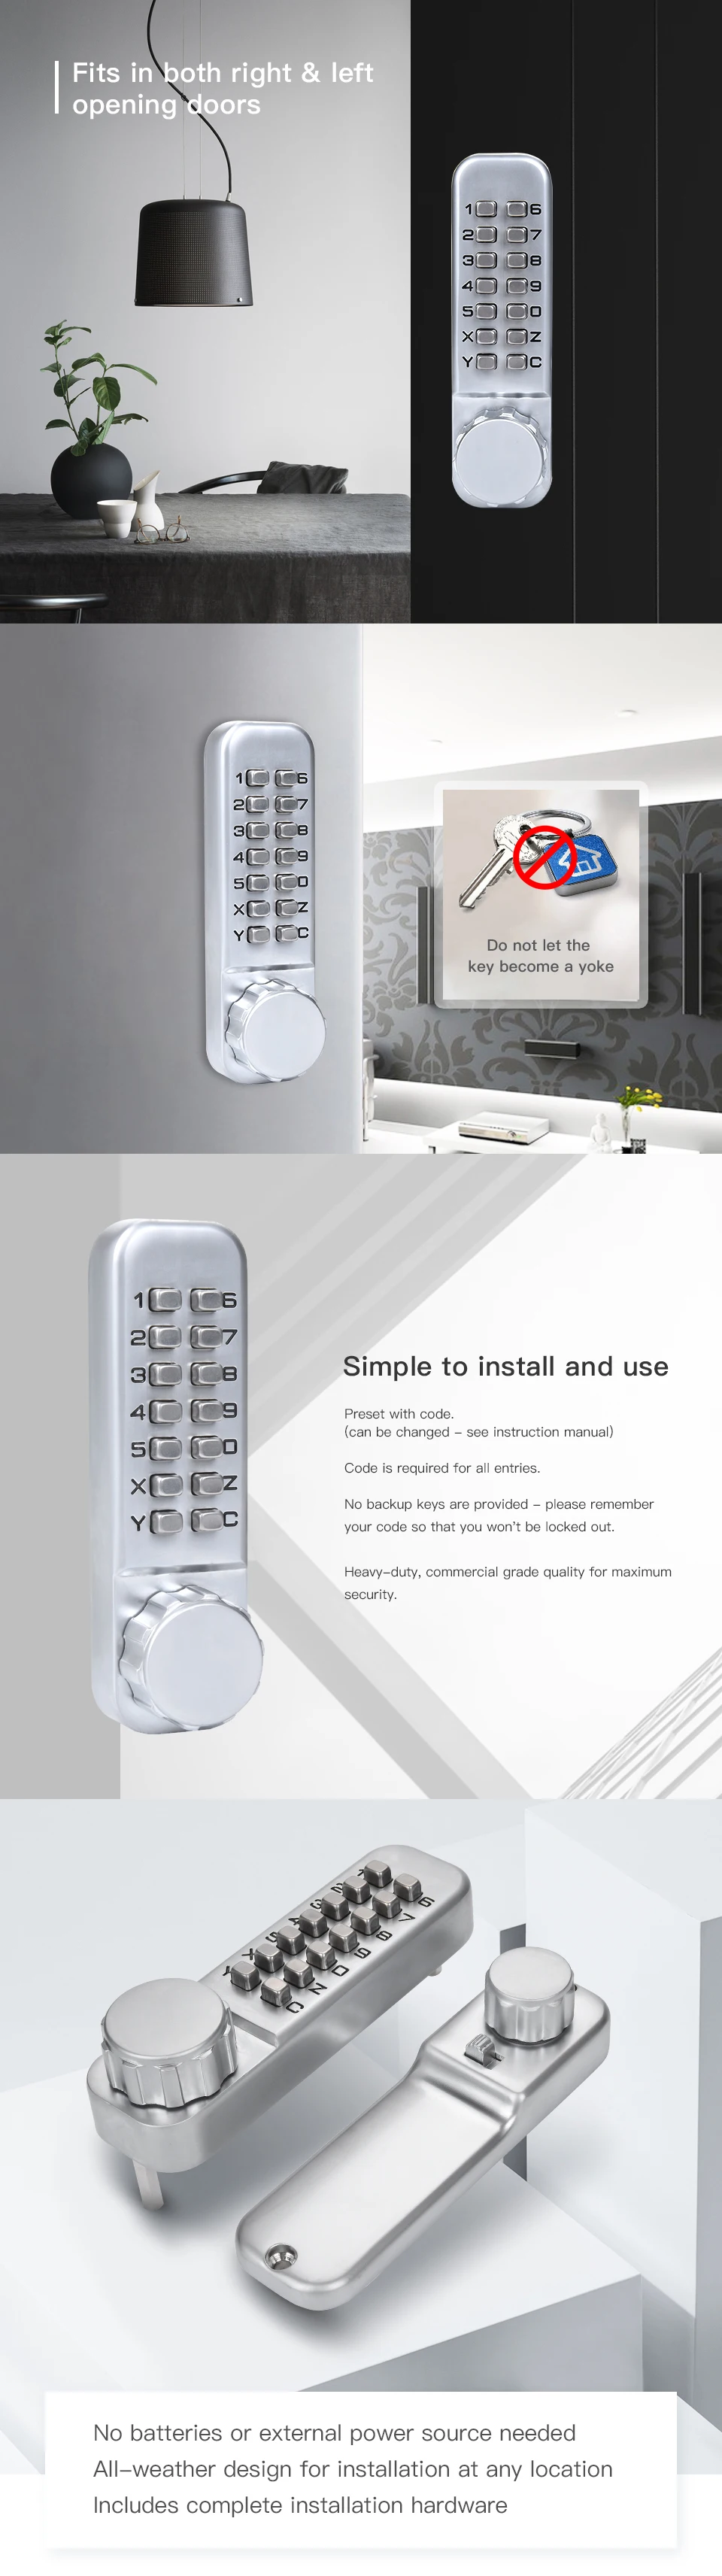 KAK цинковый сплав Keyless комбинация механический цифровой дверной замок без питания кнопочные кодовые замки для домашнего оборудования мебели